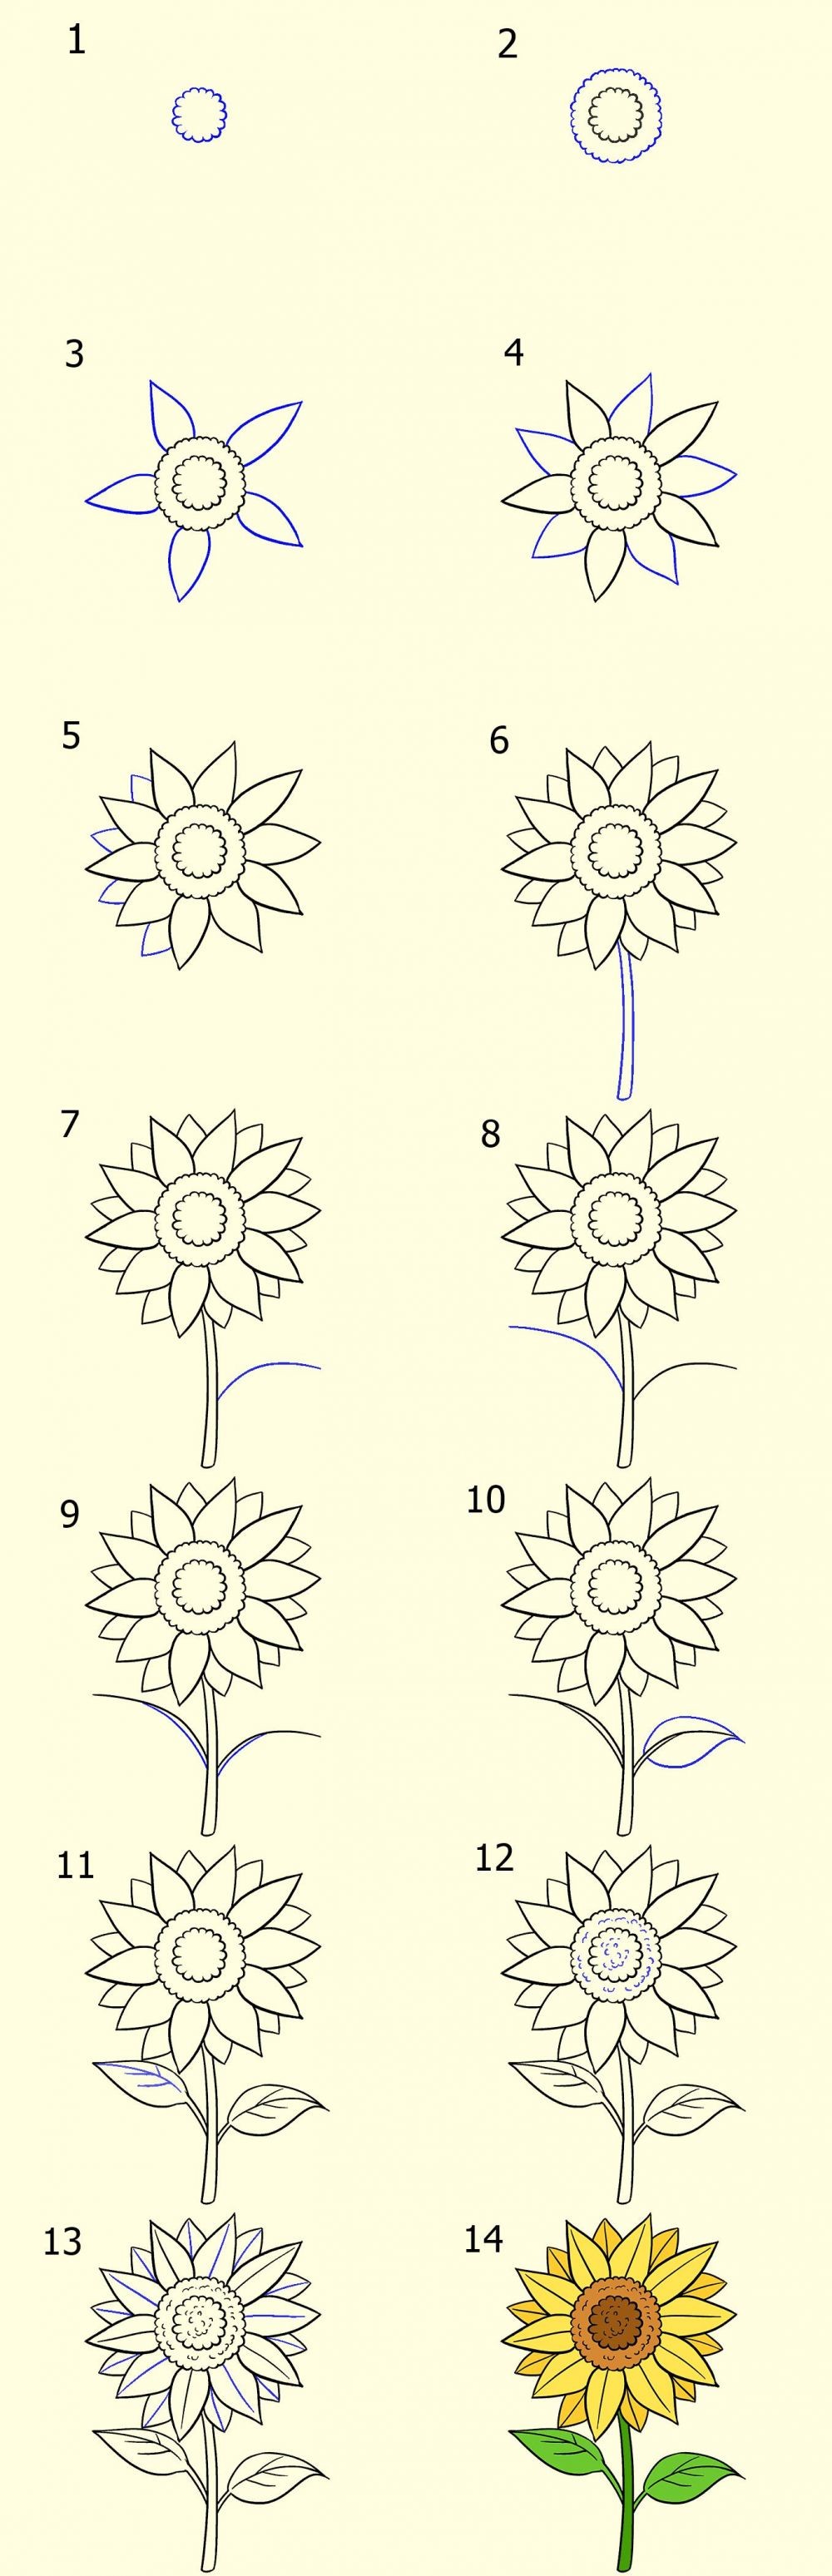 3 Cara Menggambar Sketsa Bunga Yang Simple Dan Mudah Ditiru